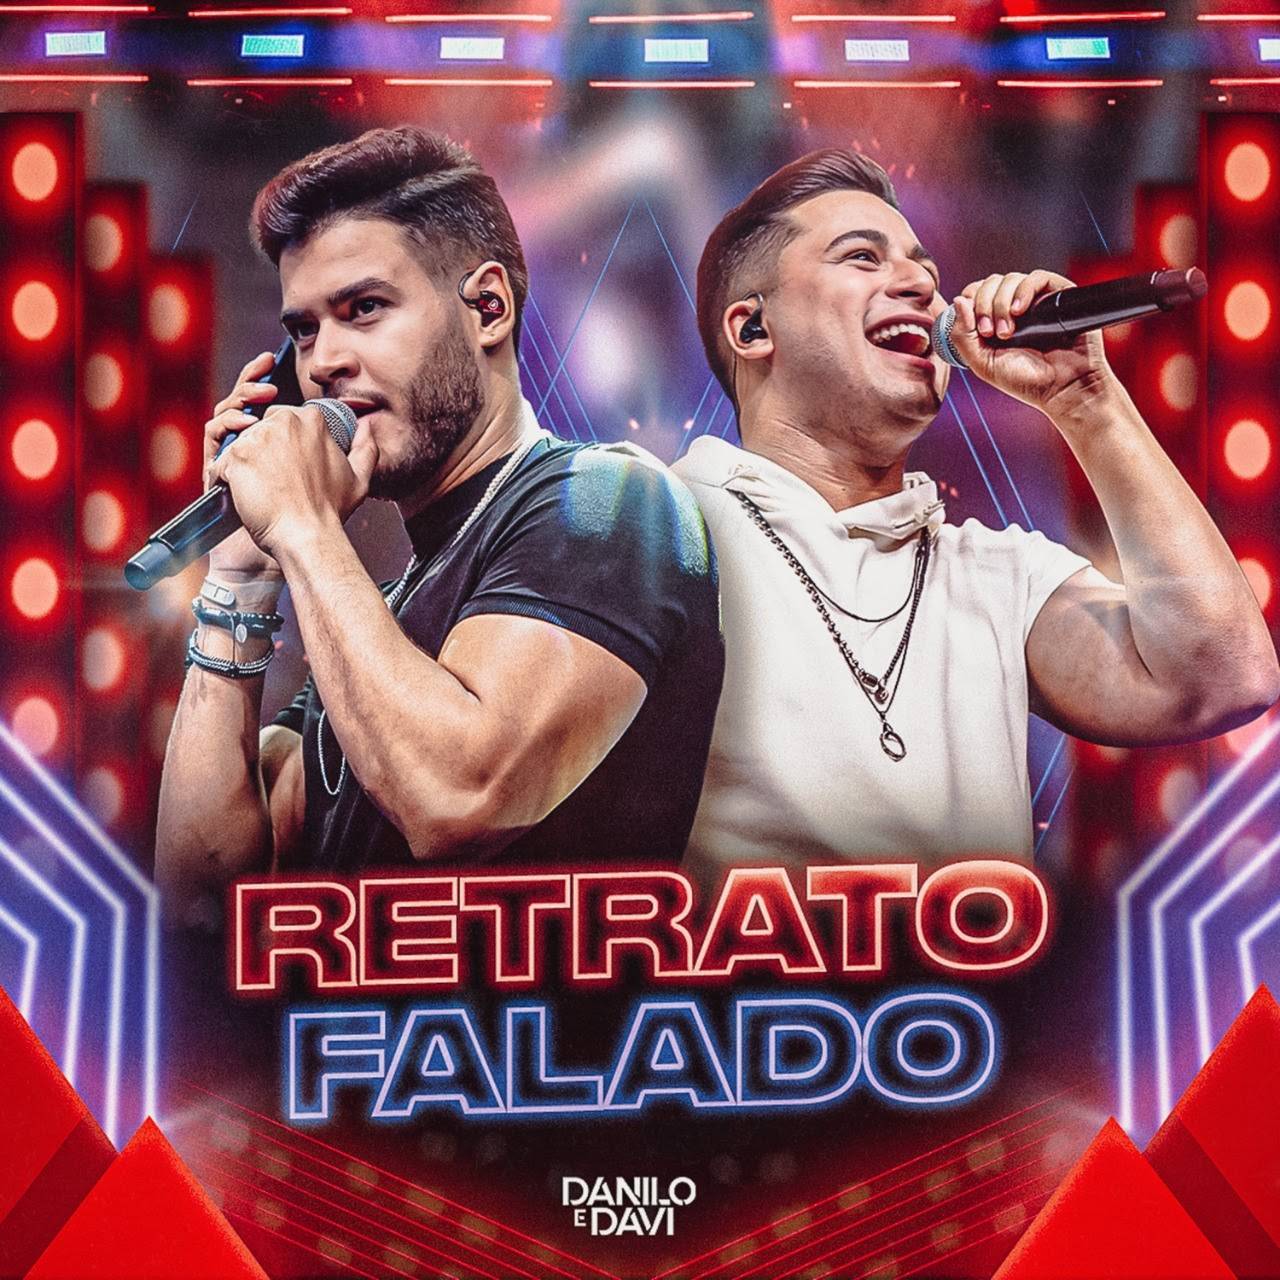 Nova dupla Danilo e Davi lança canção inédita "Retrato Falado" 42